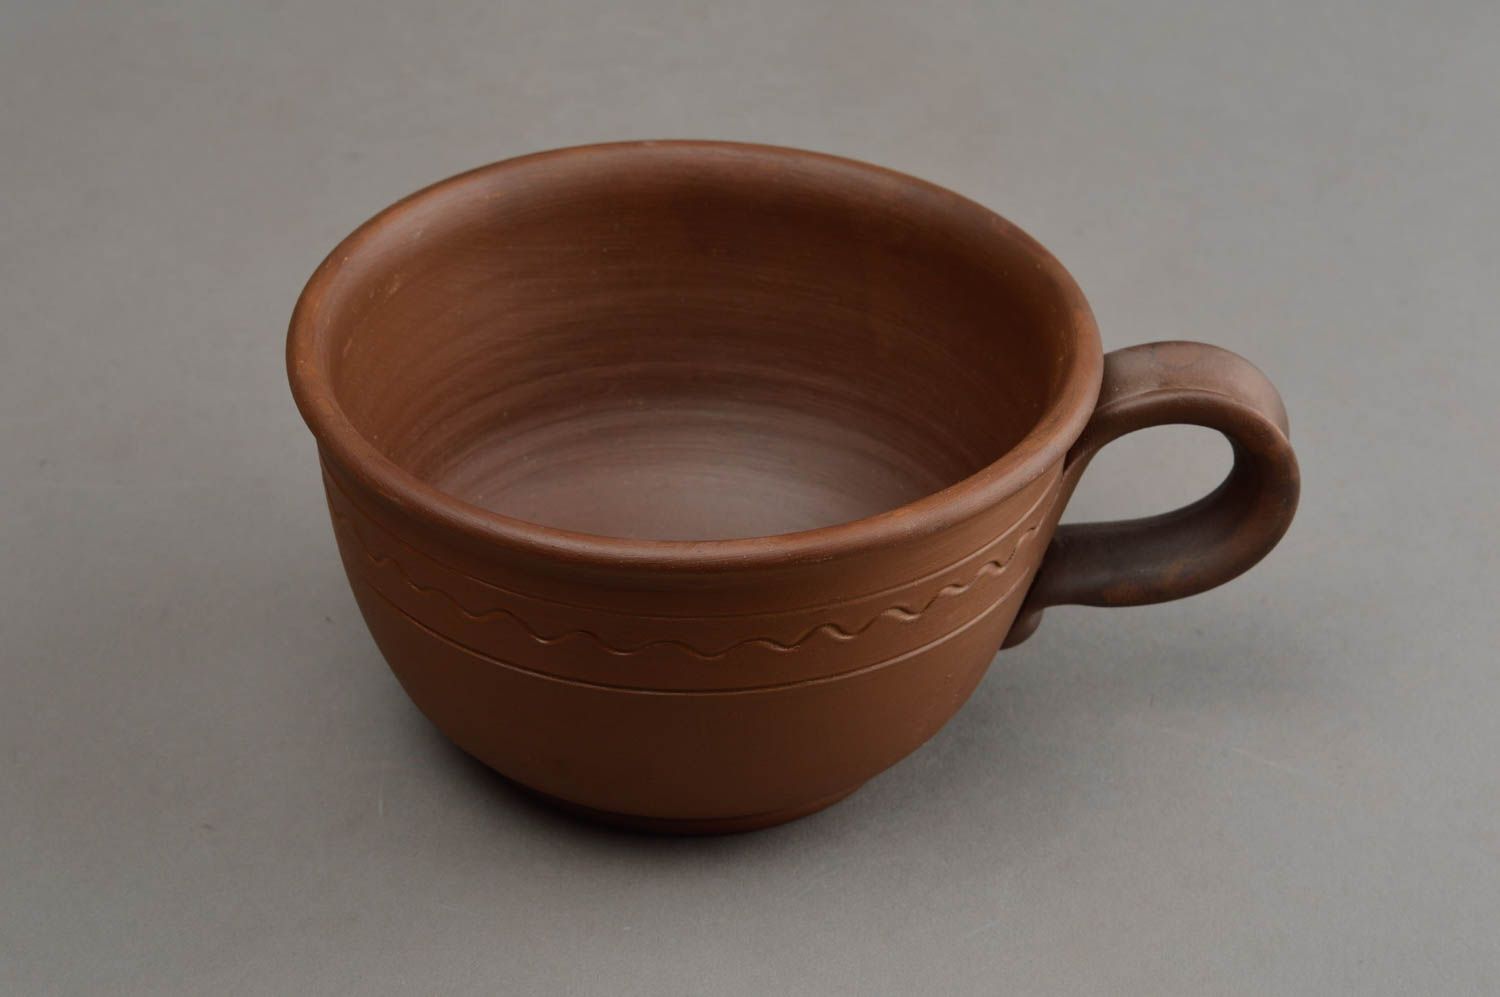 Широкая глиняная чашка ручной работы в технике гончарства красивая коричневая фото 3